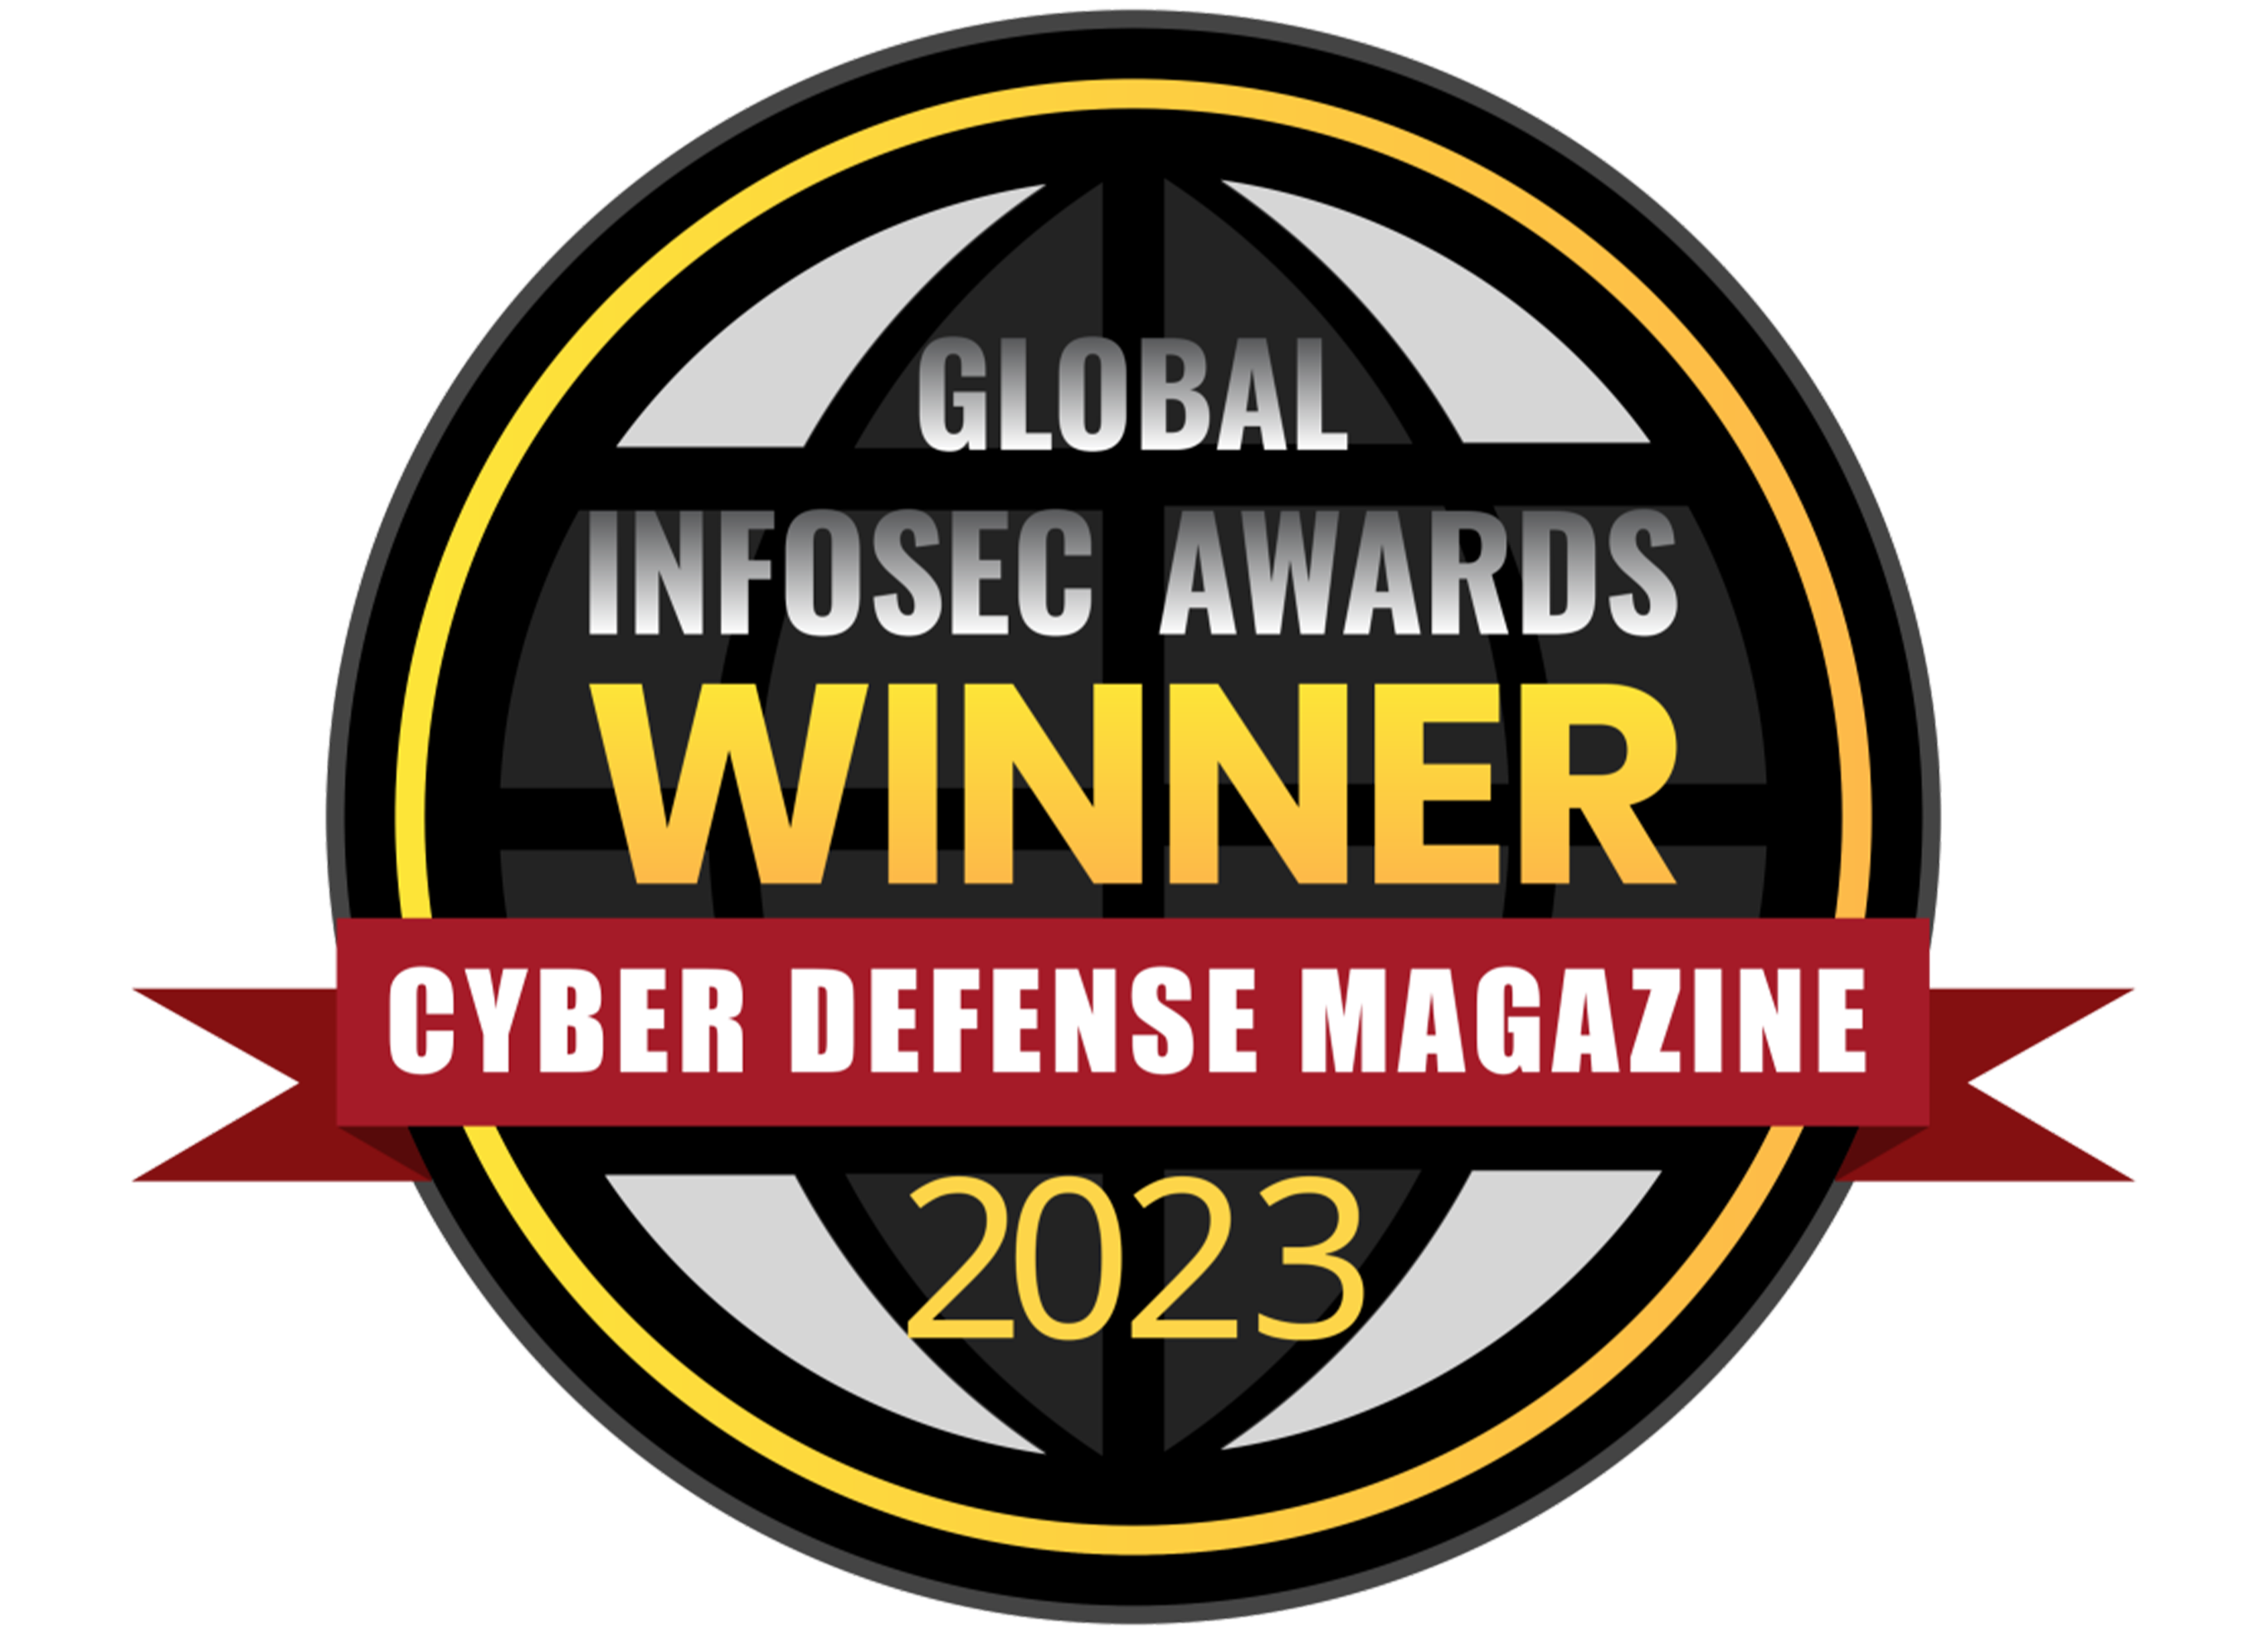 Global Infosec Awards Winner Cyber Defense Magazine 2023